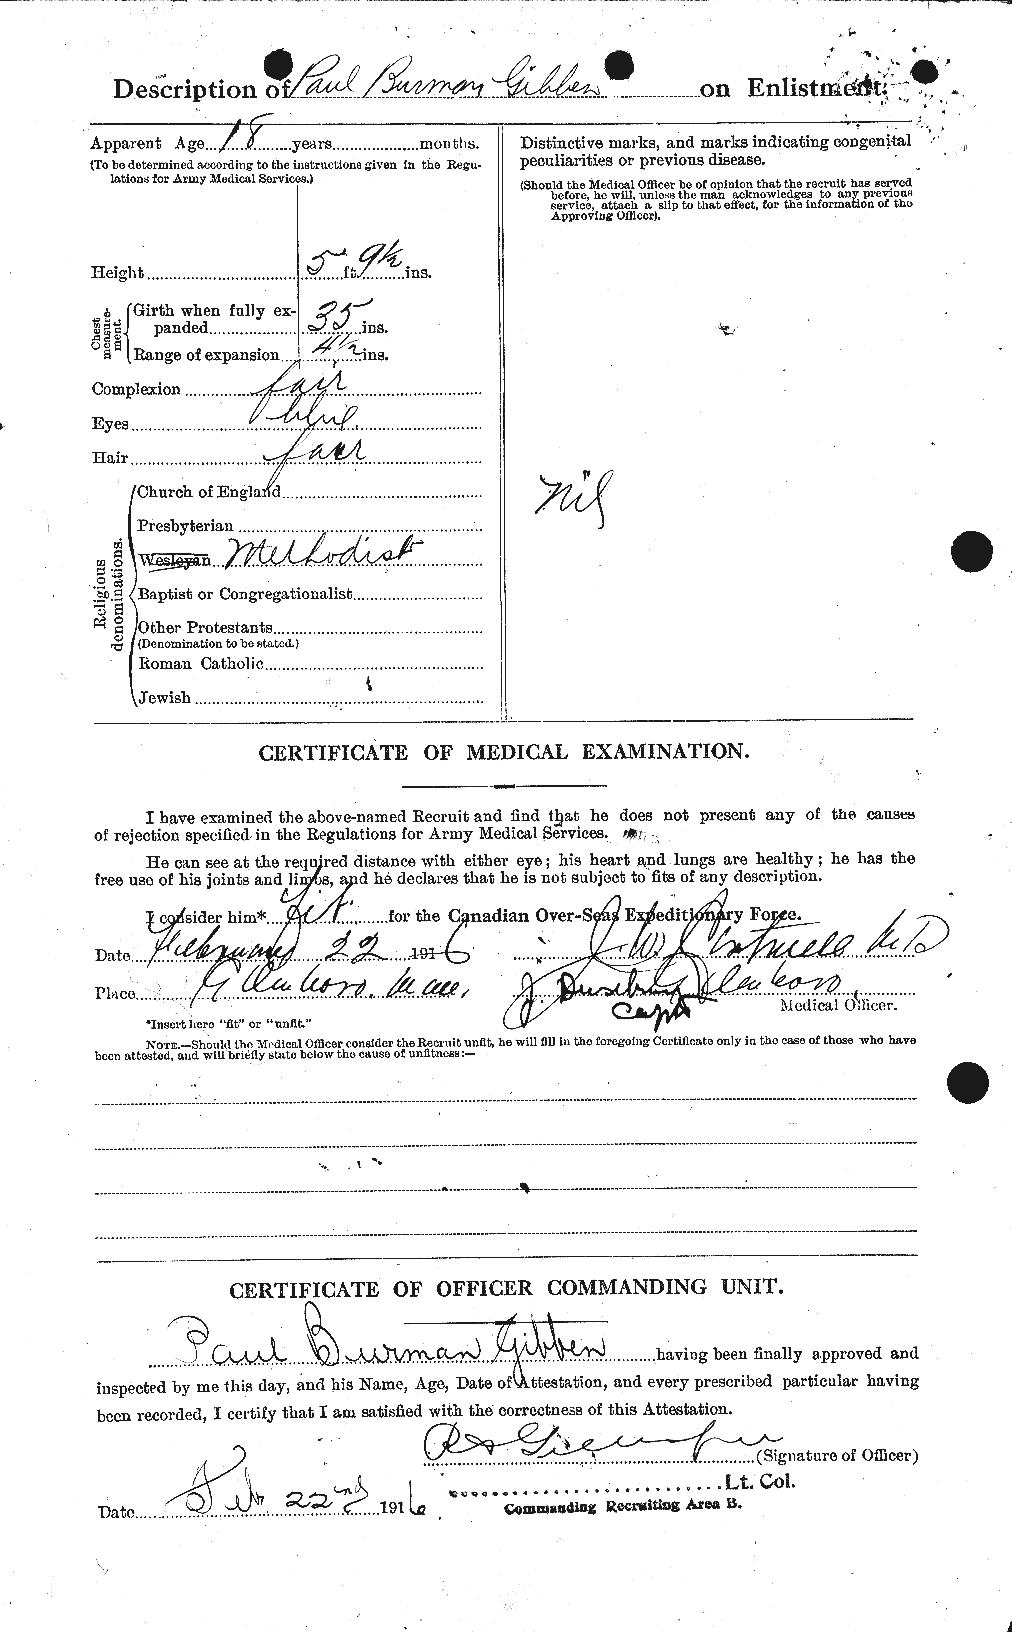 Dossiers du Personnel de la Première Guerre mondiale - CEC 347898b